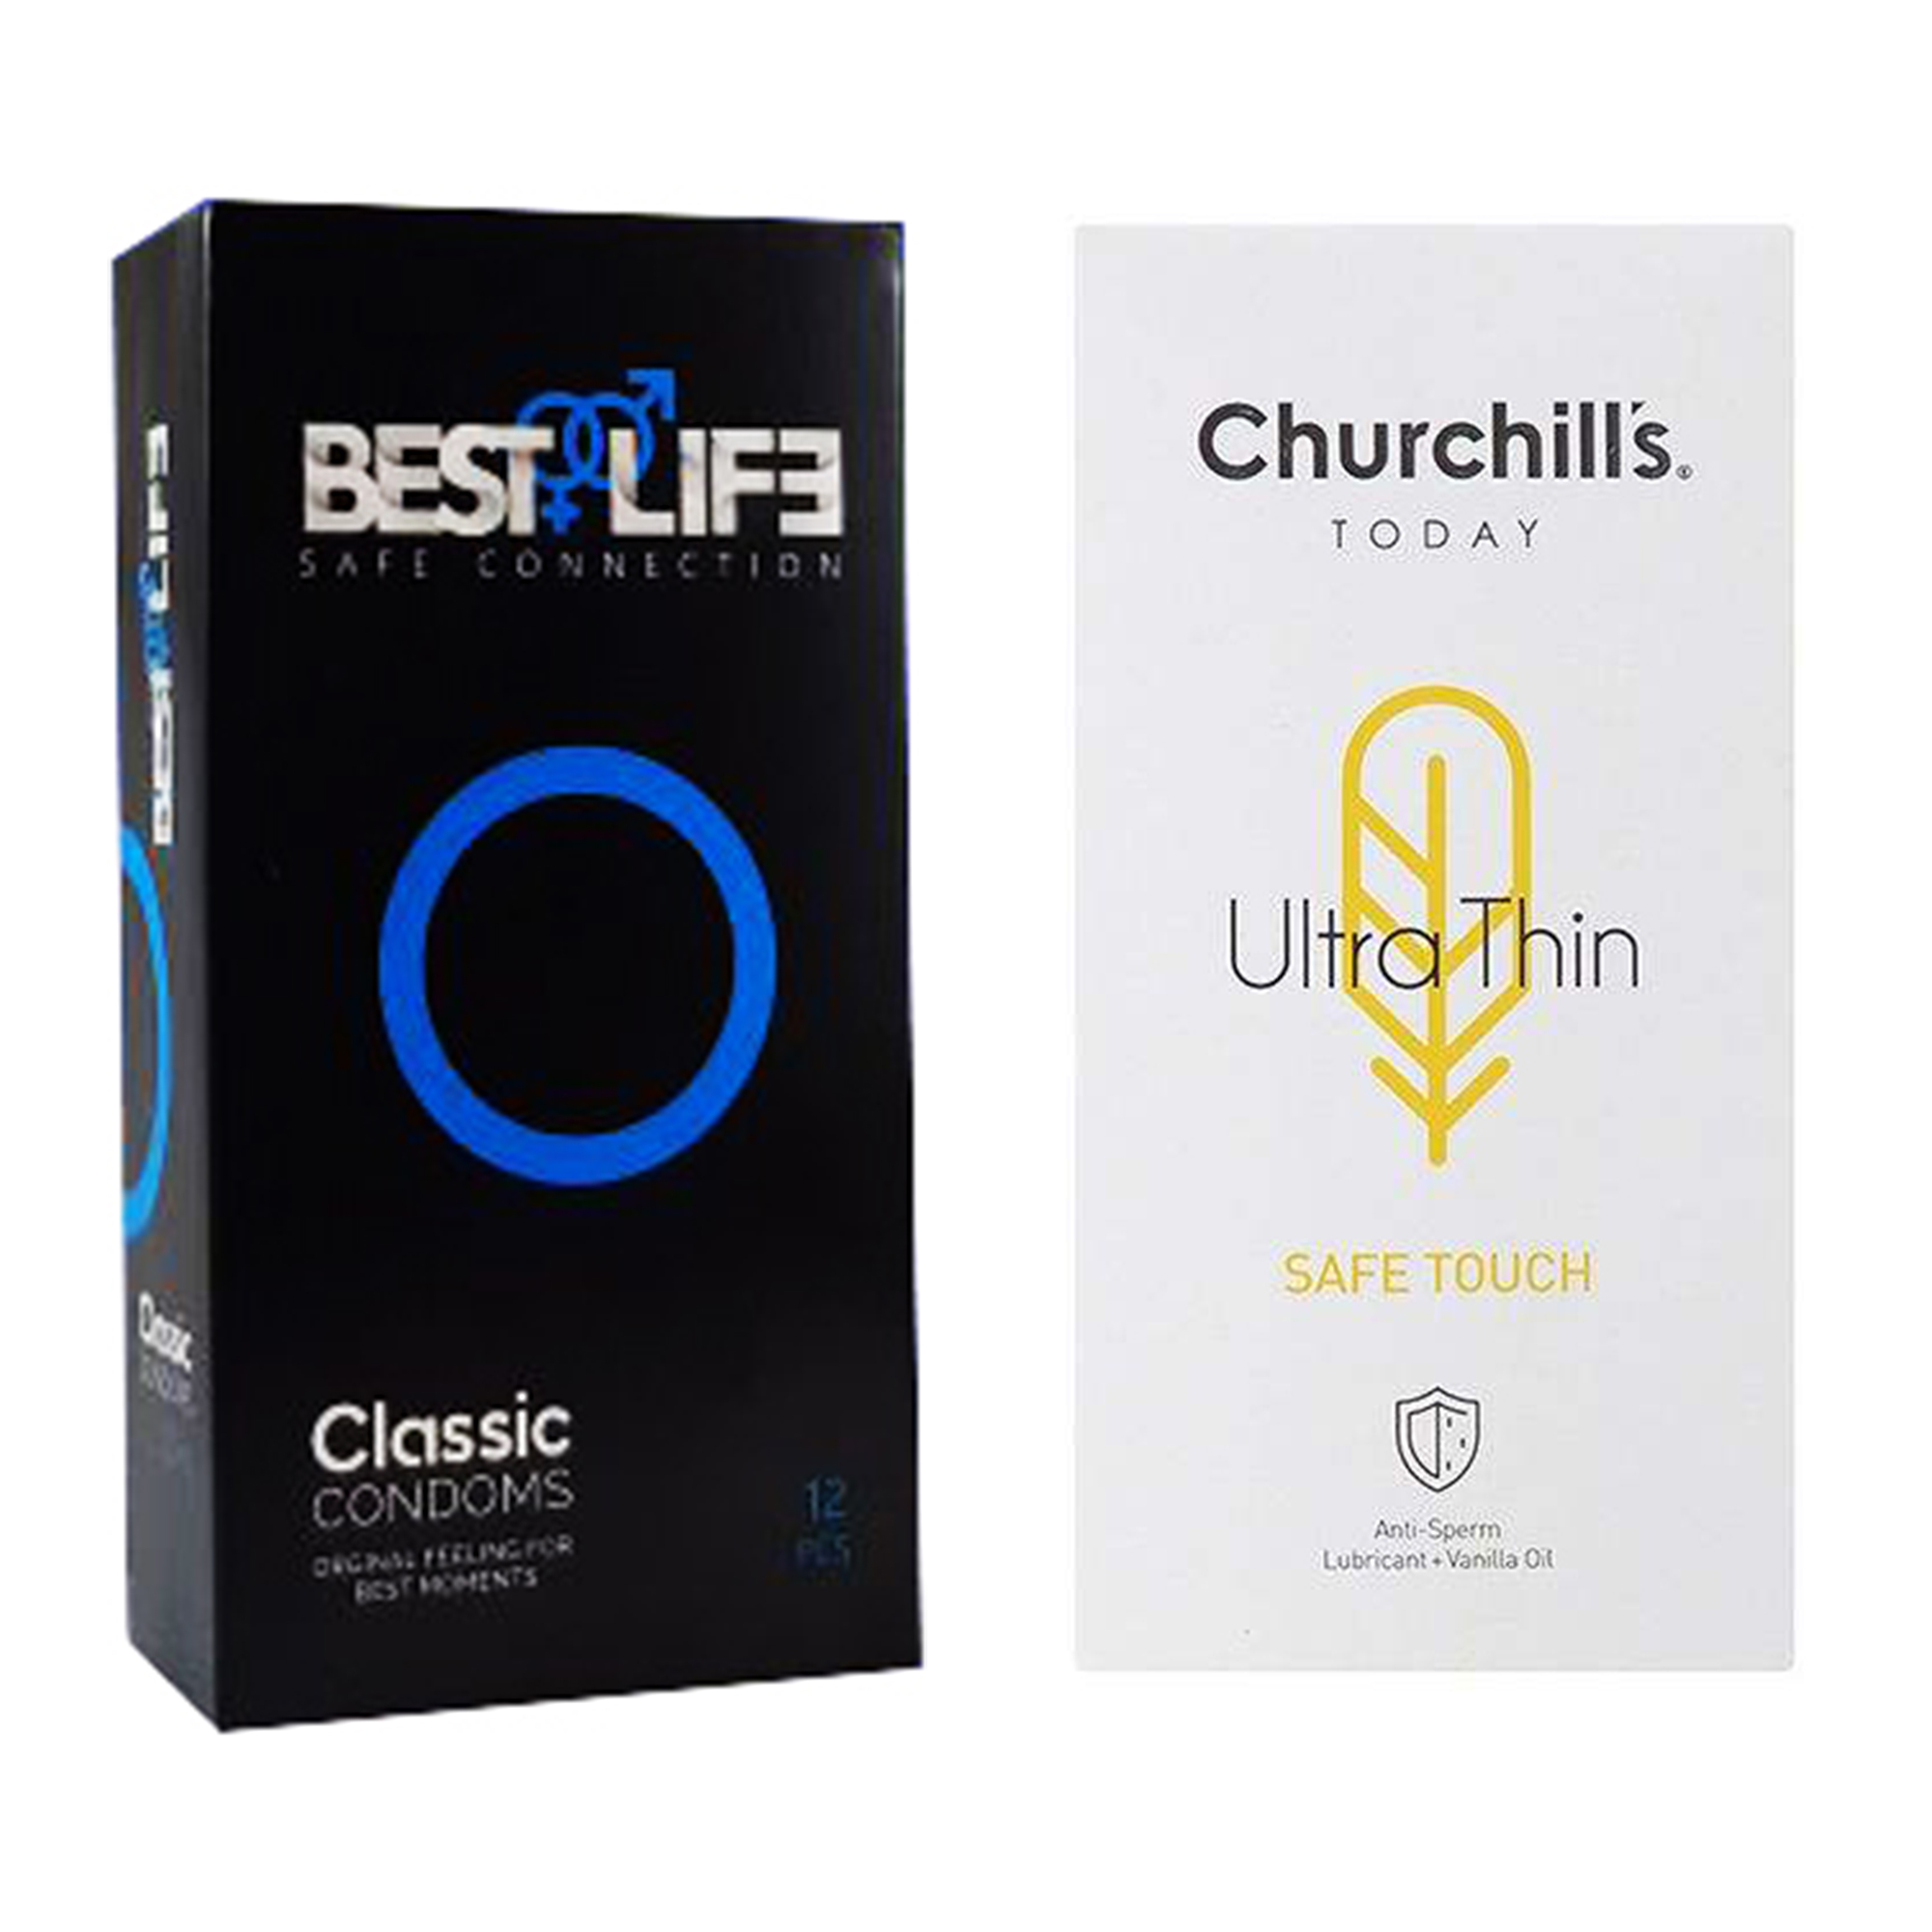 کاندوم چرچیلز مدل Safe Touch بسته 12 عددی به همراه کاندوم بست لایف مدل Classic بسته 12 عددی